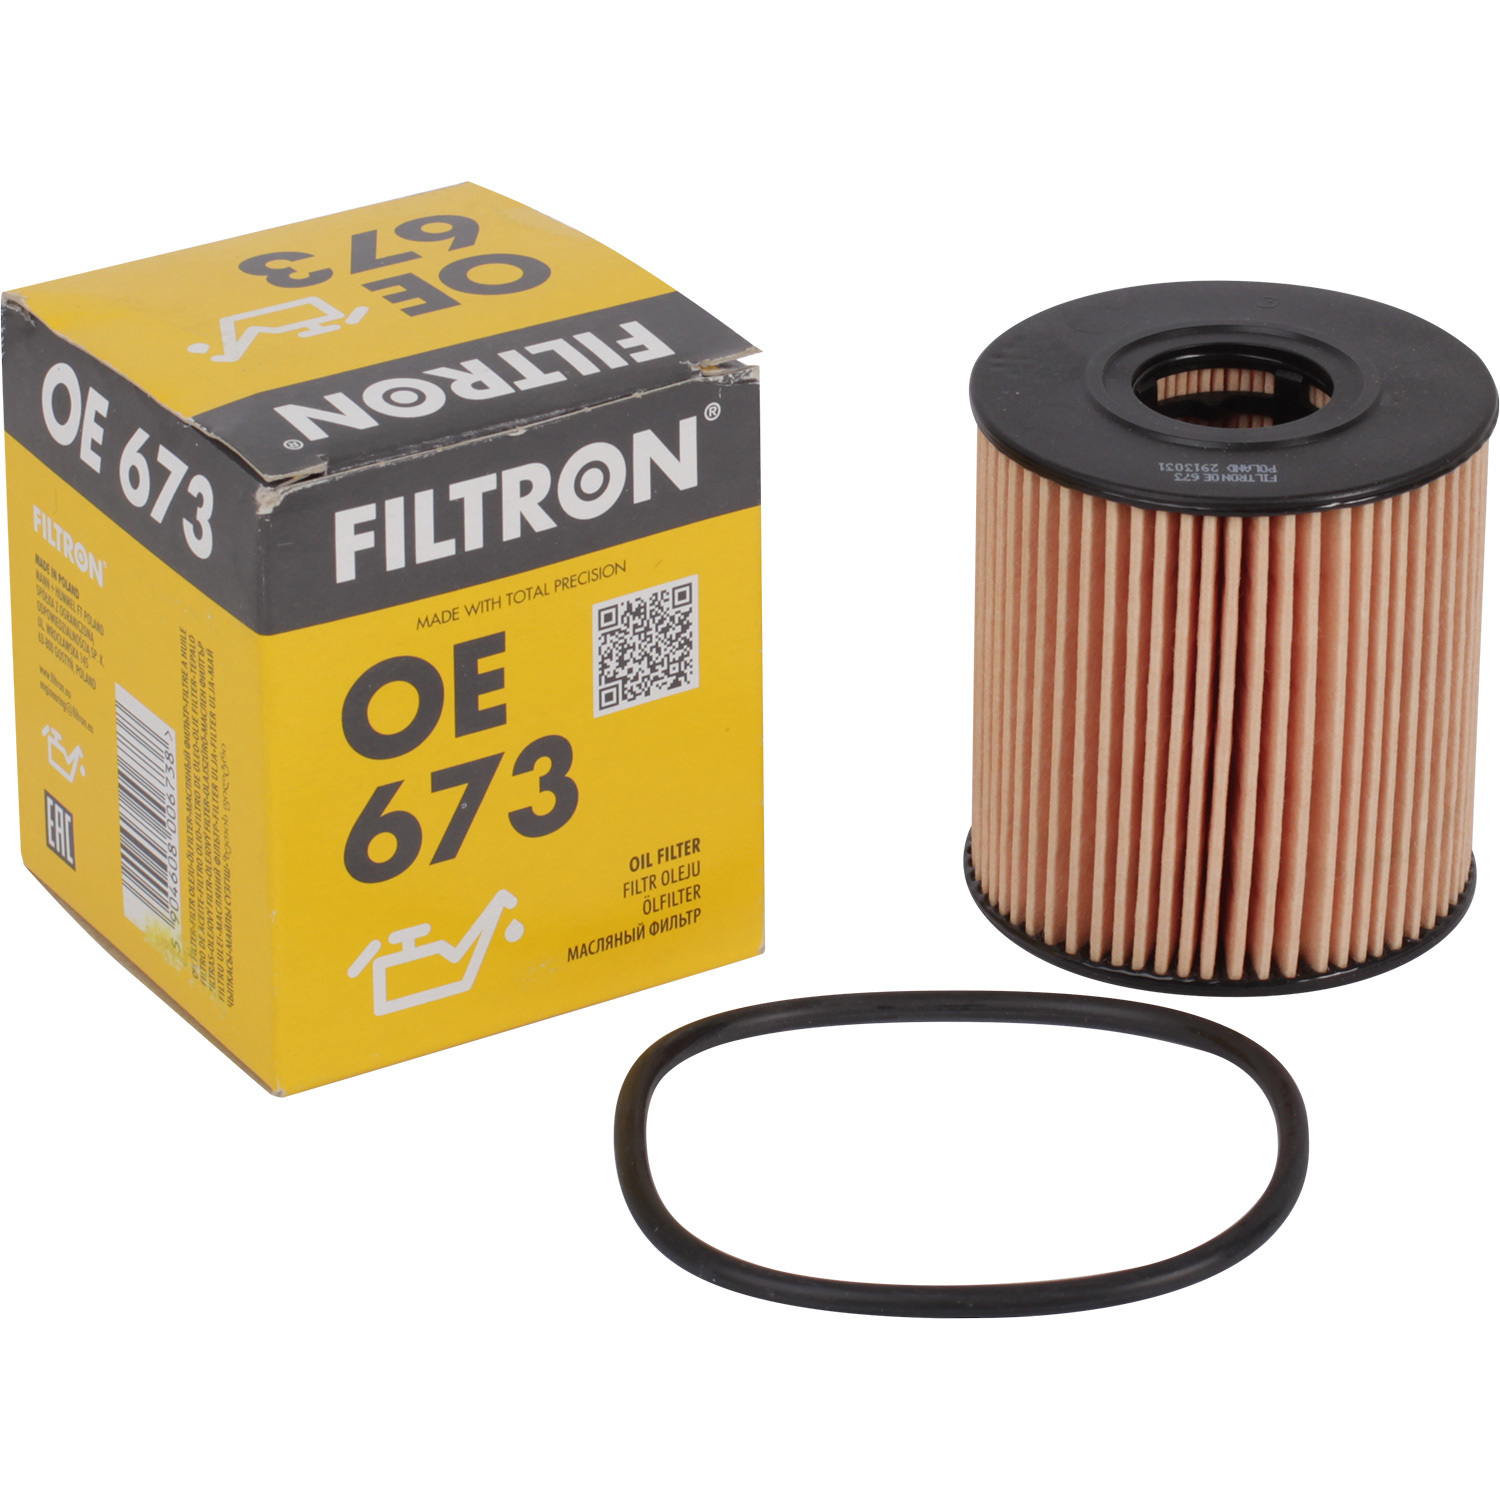 фильтры filtron фильтр масляный filtron oe673 Фильтры Filtron Фильтр масляный Filtron OE673